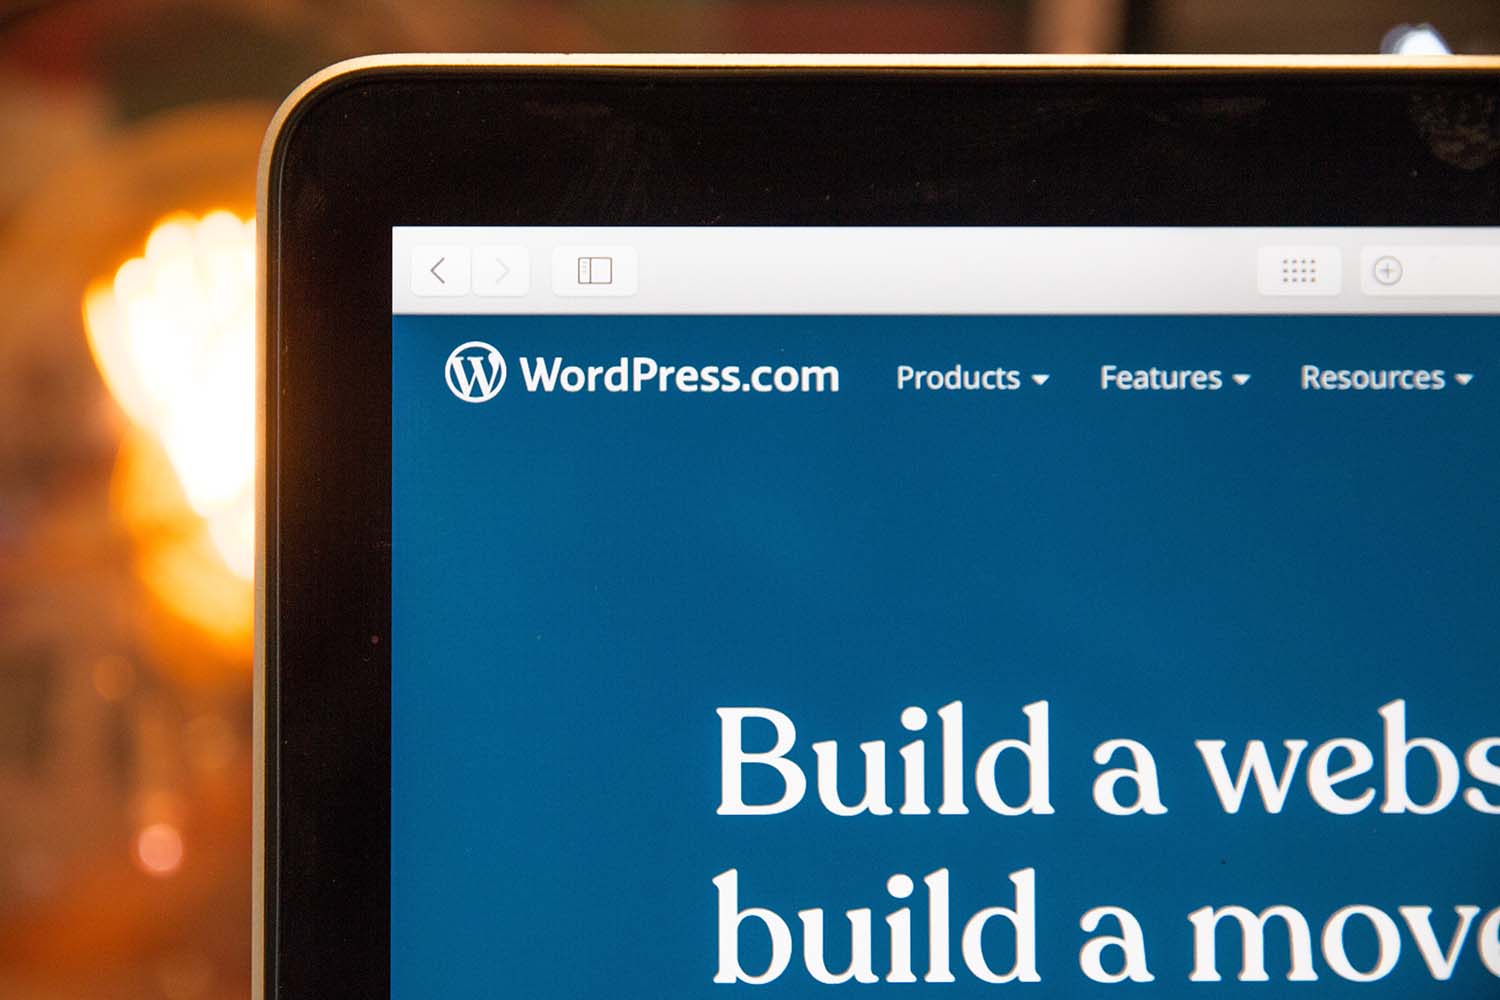 Create a WordPress account